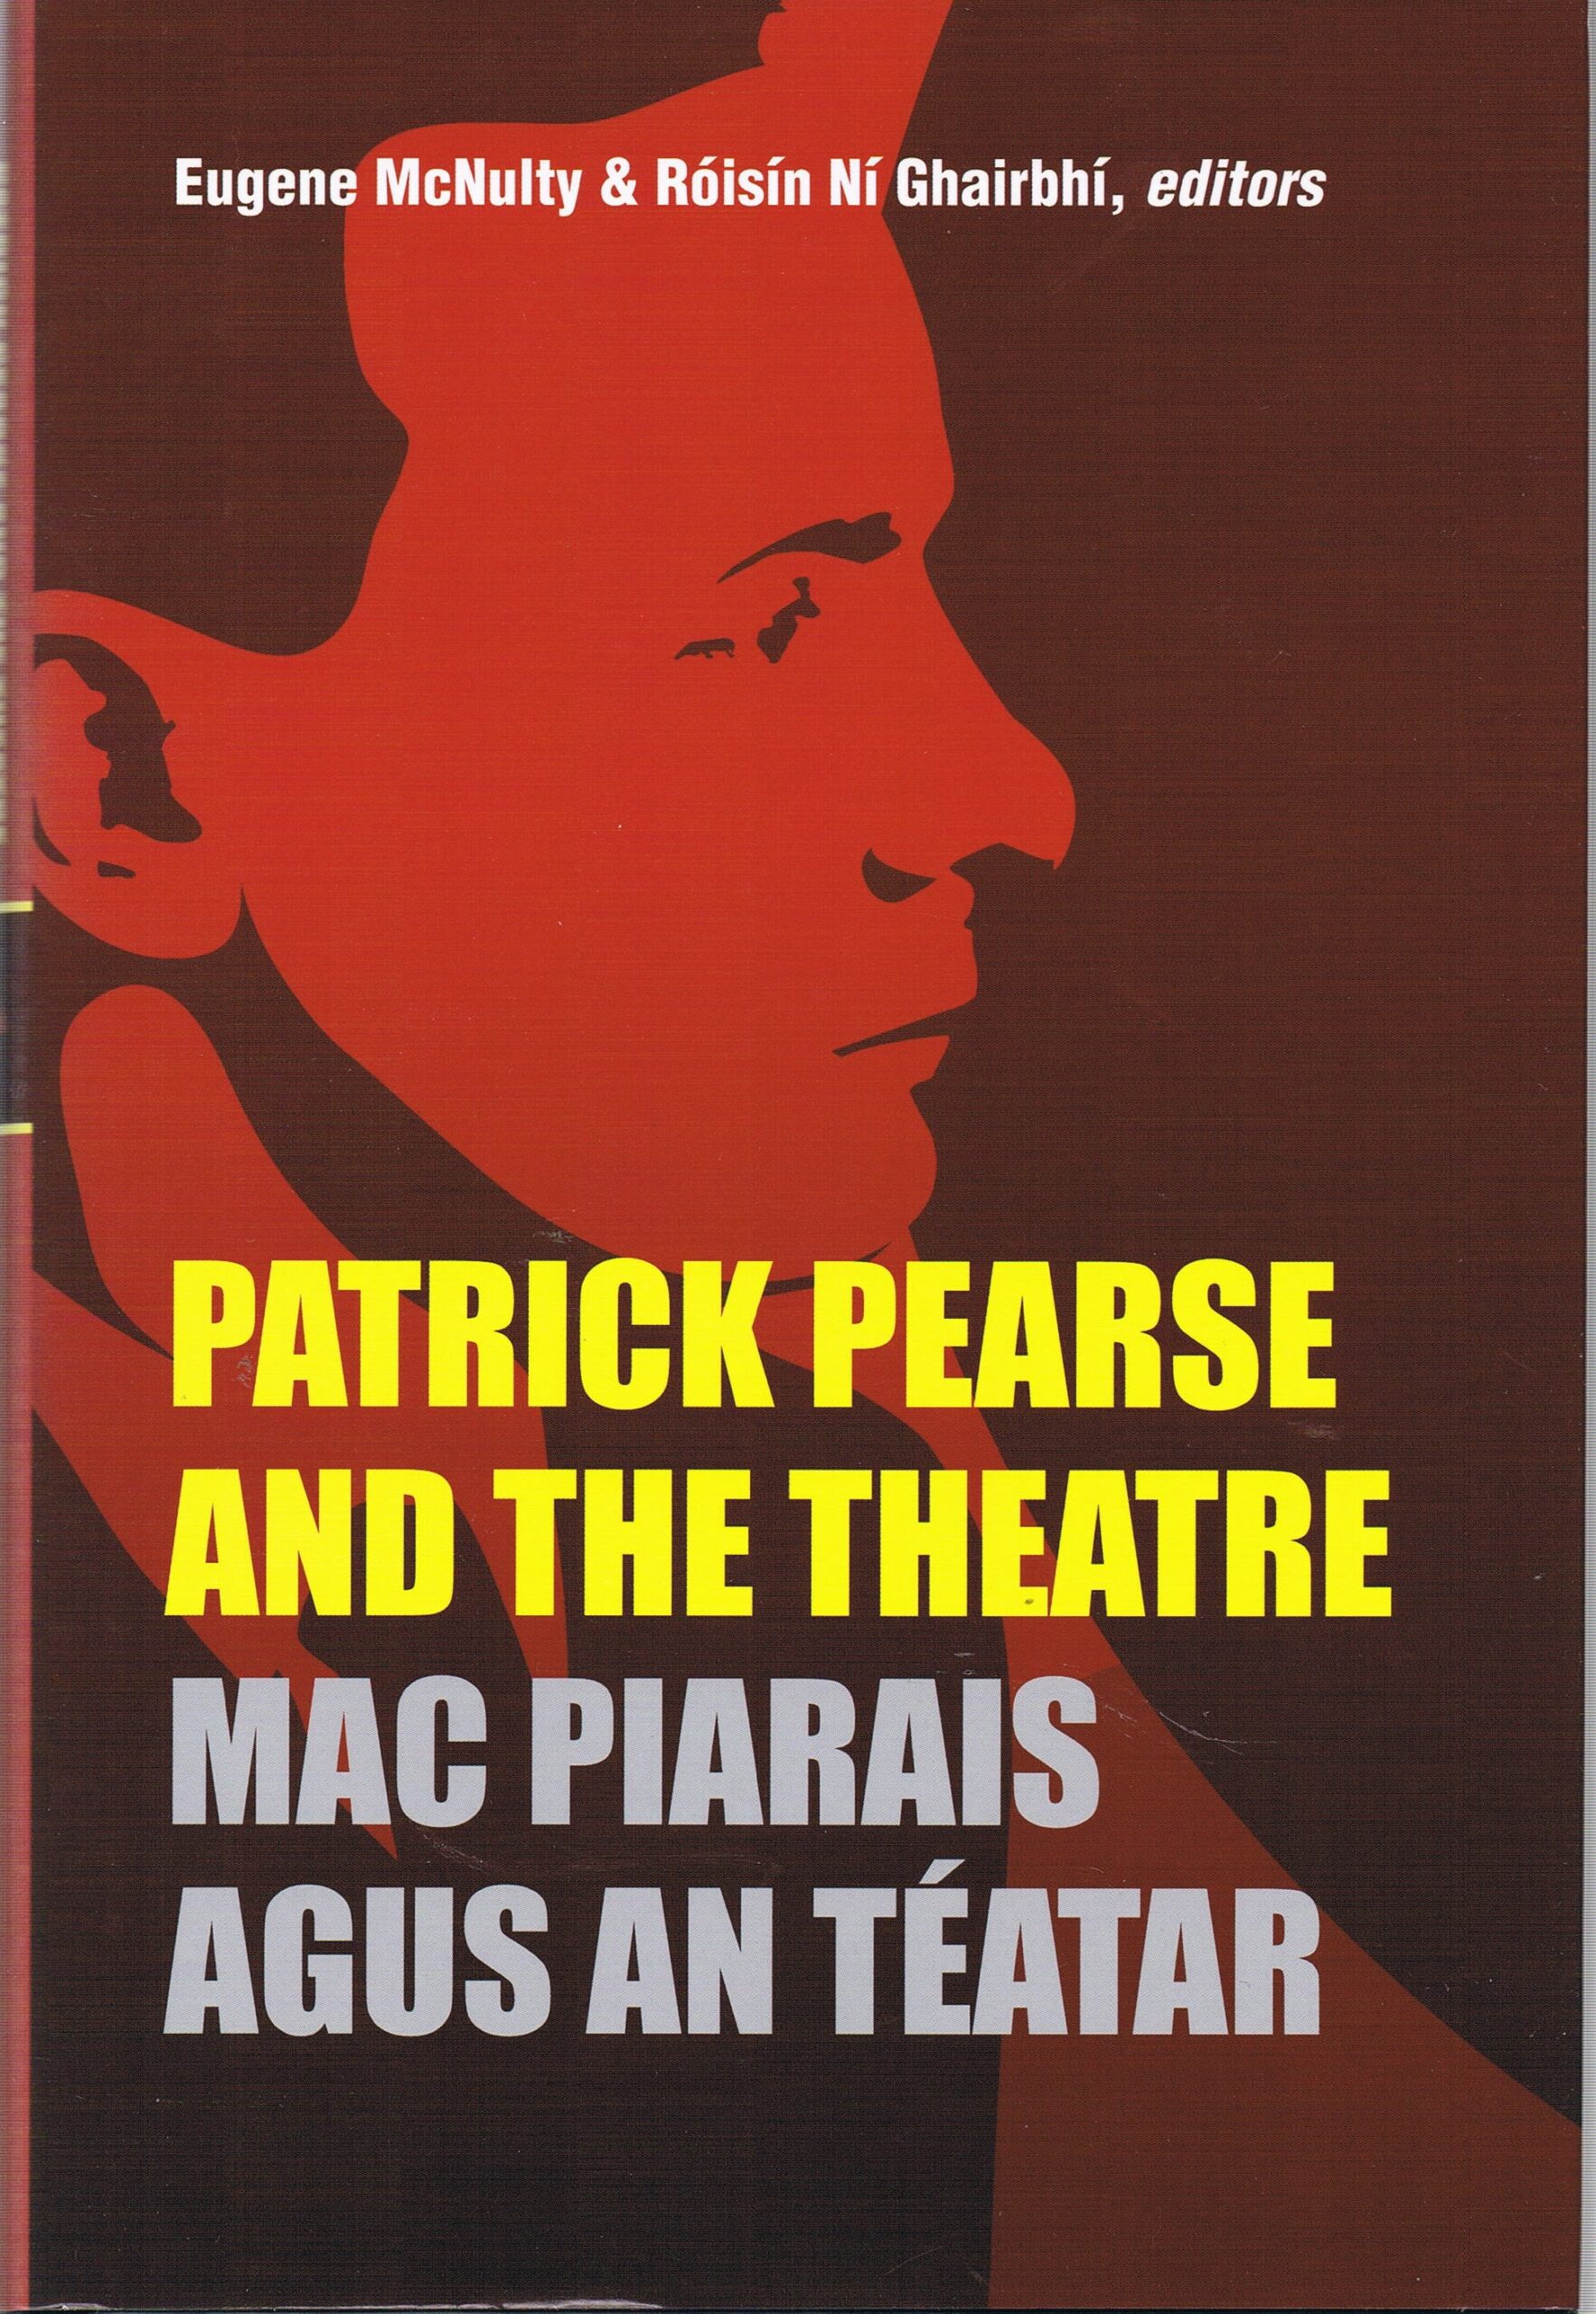 Patrick Pearse and the Theatre ( Mac Piarais Agus An Téatar) | Eugene McNulty & Roisin Ni Ghairbhi | Charlie Byrne's